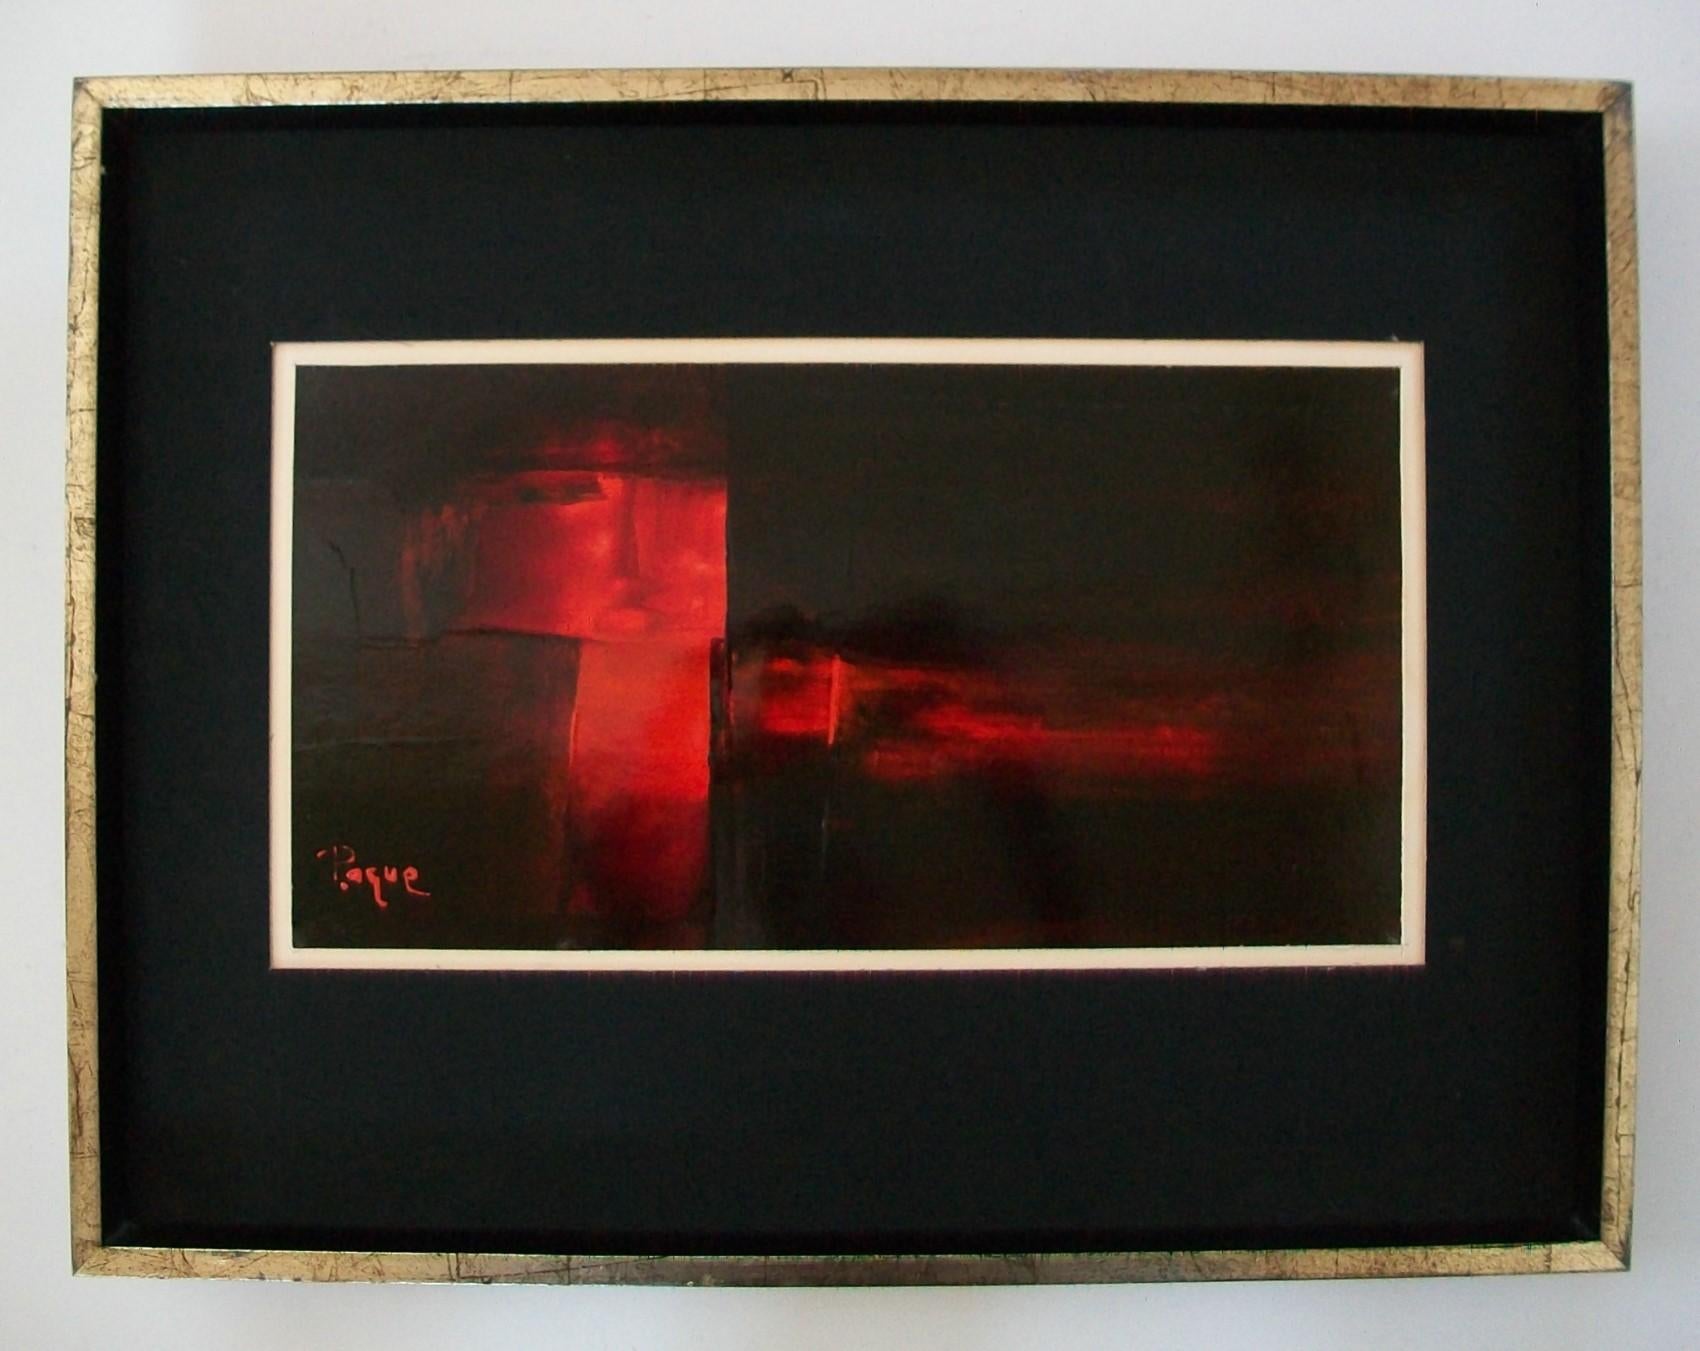 SERGE PAQUET (PAQUE) - Abstraktes Ölgemälde aus der Mitte des Jahrhunderts auf Karton - mit kräftigen roten Strichen auf schwarzem Hintergrund - schwarze und weiße matte Tafeln unter Glas - Rahmen aus Blattsilber und schwarzem Lack mit abgeschrägter